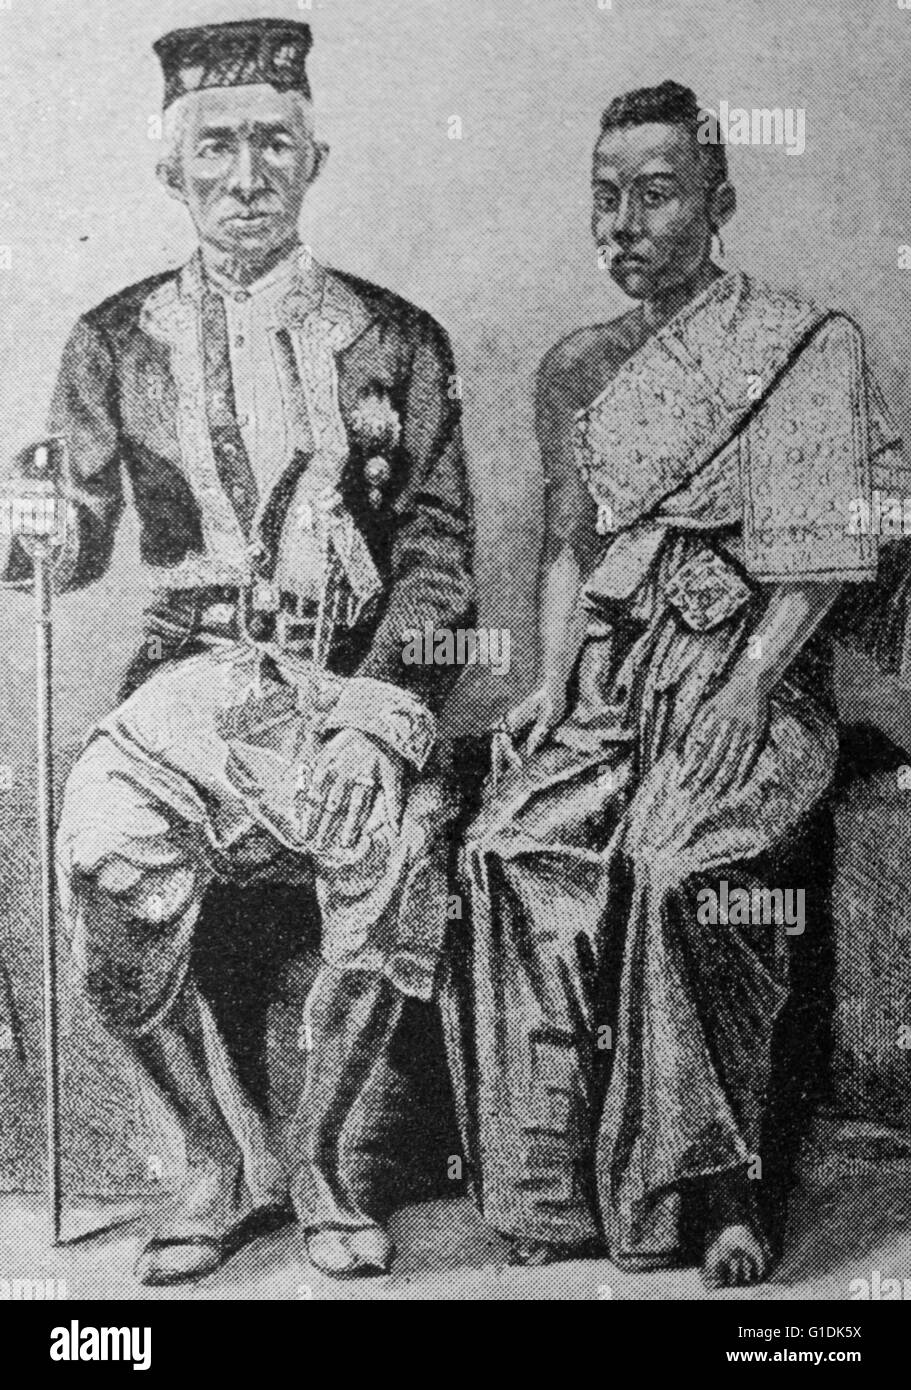 Portrait du Roi Phra Bat Somdet Phra Maha Poramenthra Mongkut Klao Chom Phra Chao Yu Hua (1804-1868) et son épouse, la Reine Debsirindra du Siam (1834-1862). Datée 1851 Banque D'Images